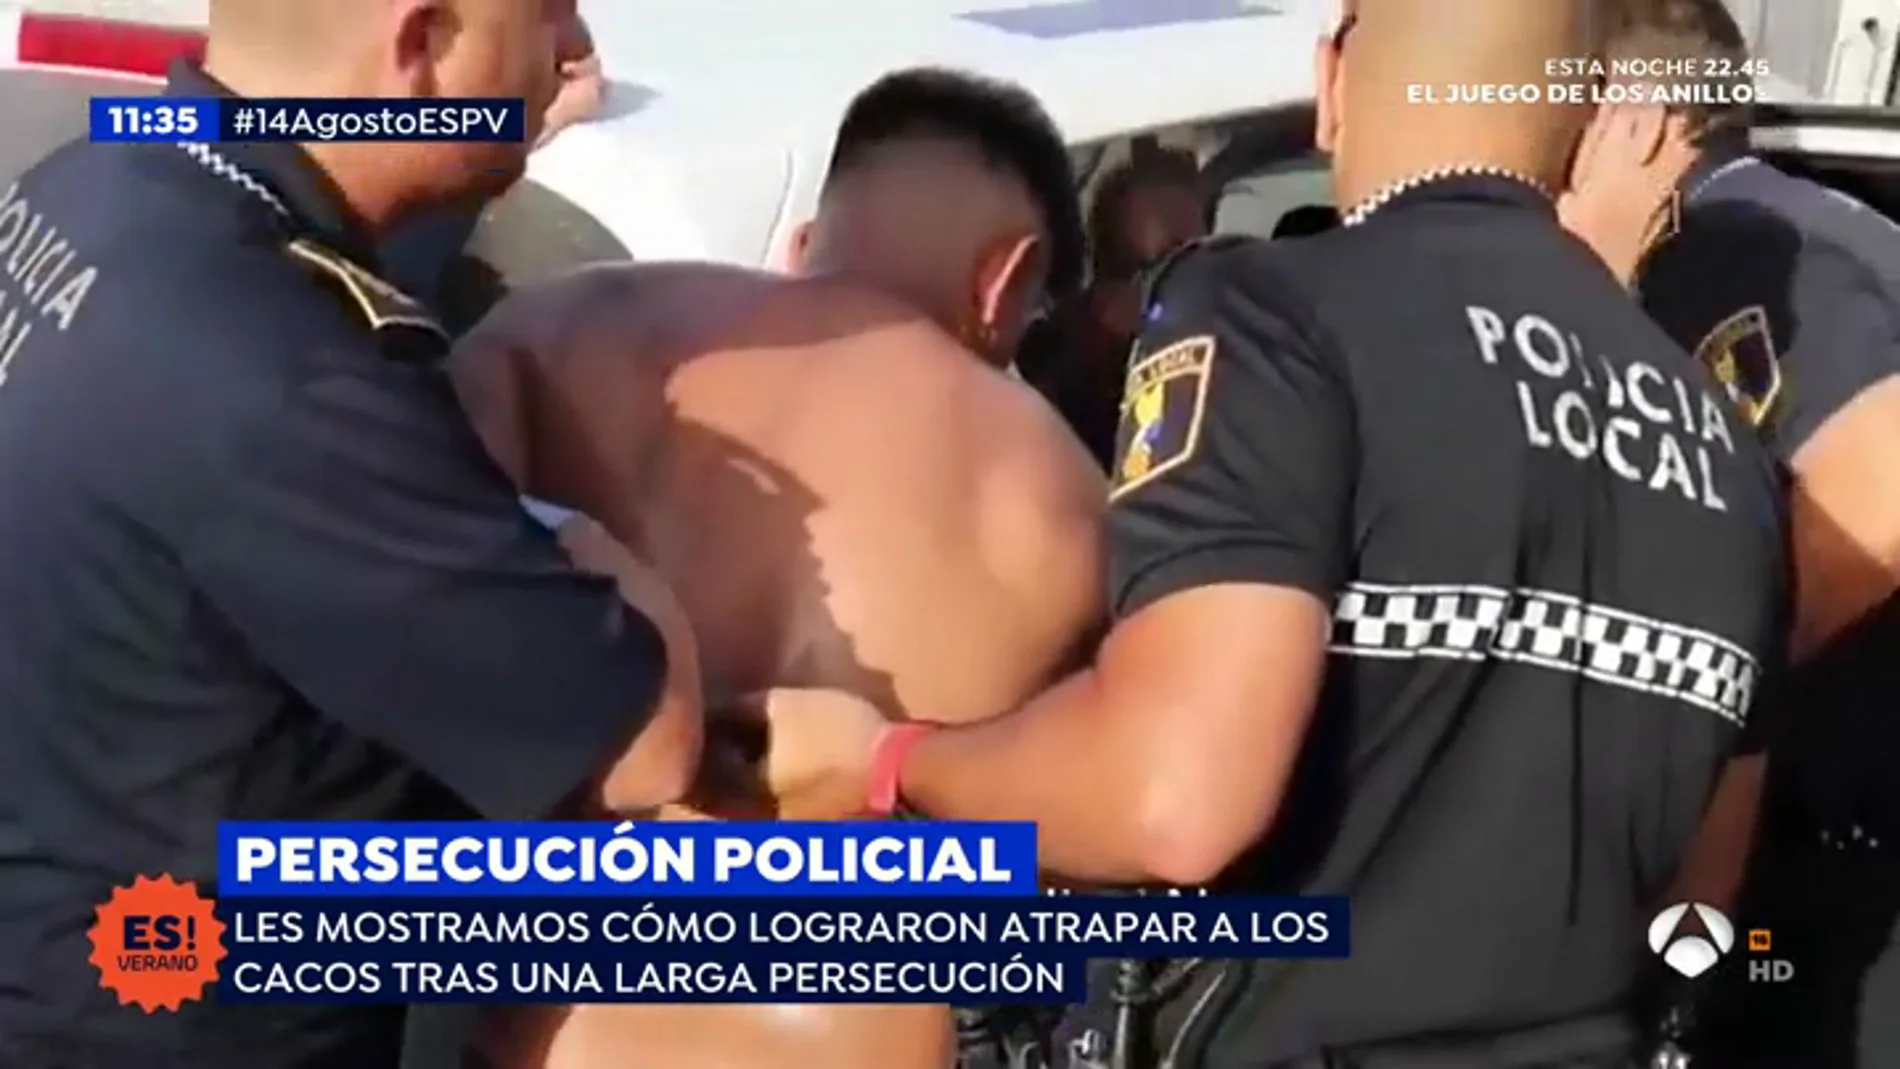 Persecución policial en Santa Pola